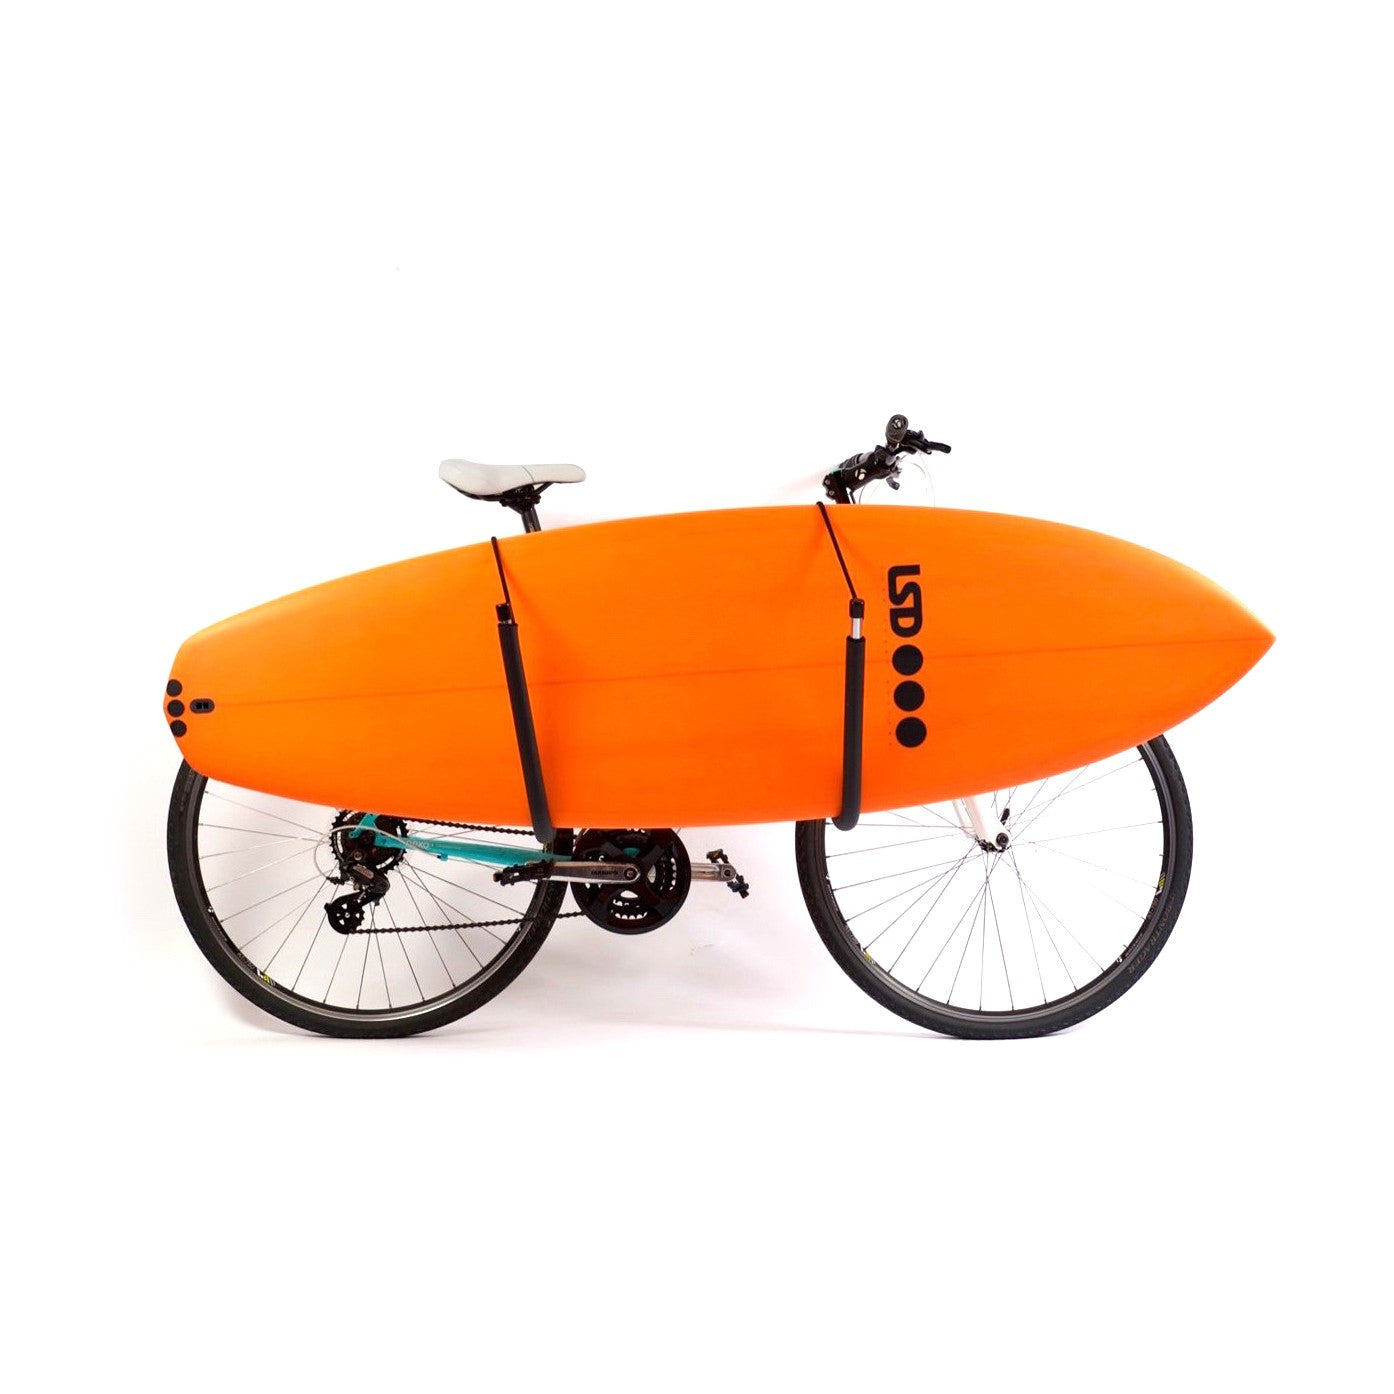 SURF SYSTEM - Portabicicletas de surf (shortboards, longboards y SUP pequeños)